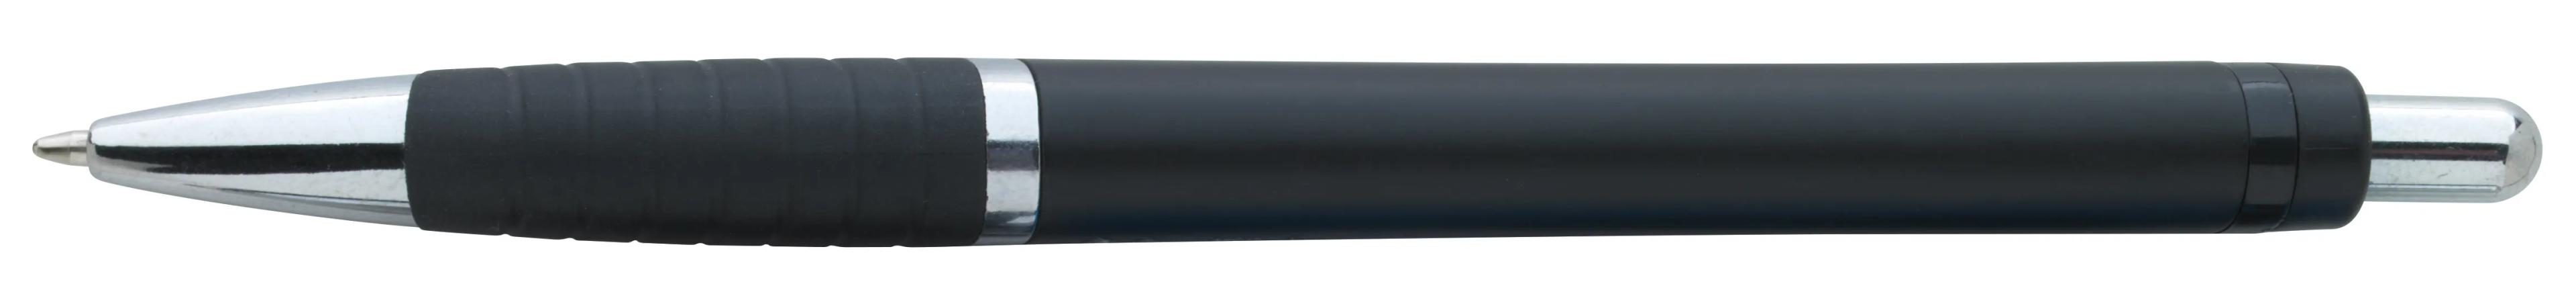 Arrow Metallic Pen 17 of 43